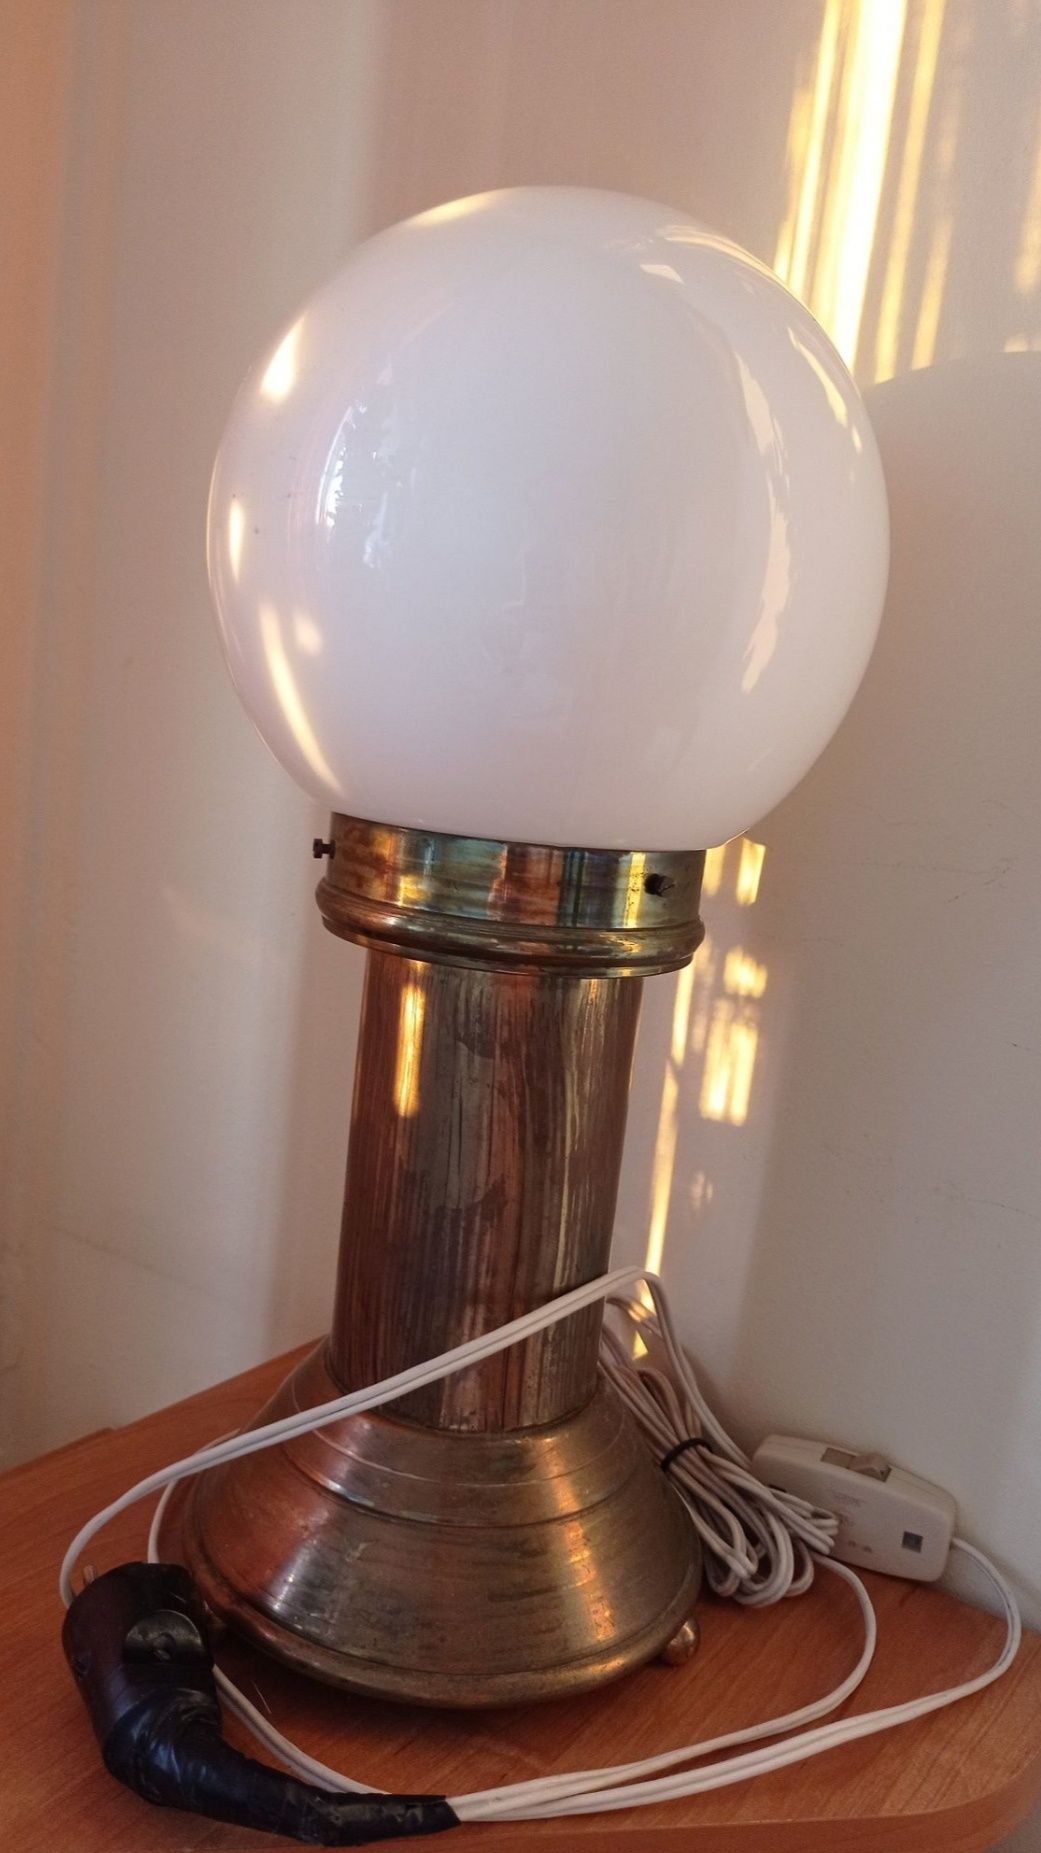 Ciężka.mosiezna lampa z kloszem w kształcie kuli